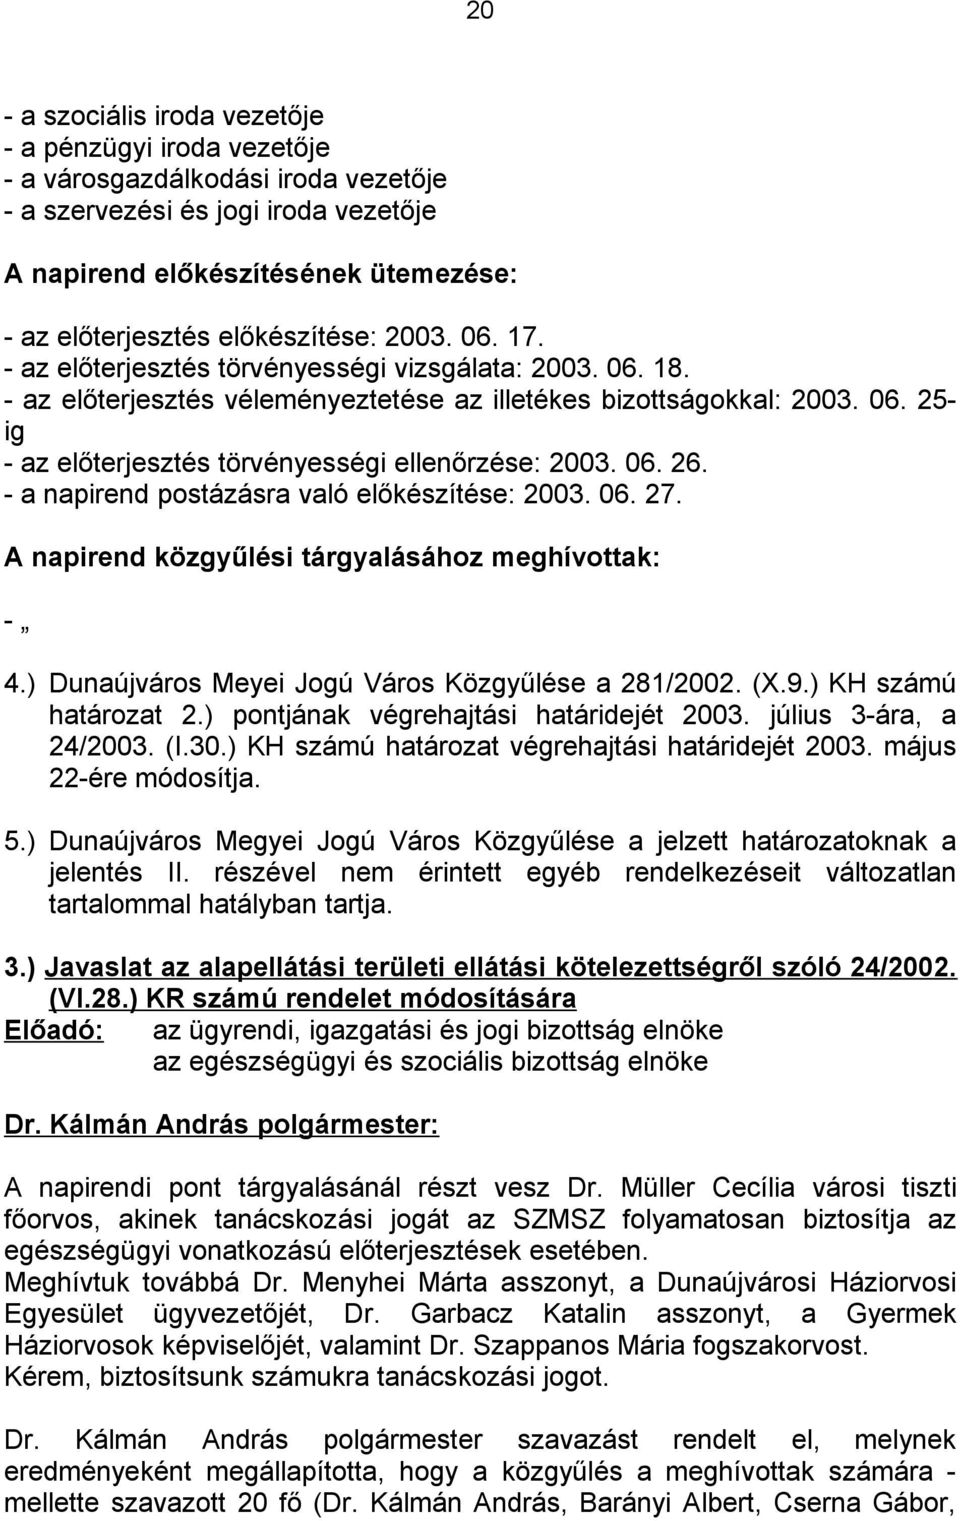 06. 26. - a napirend postázásra való előkészítése: 2003. 06. 27. A napirend közgyűlési tárgyalásához meghívottak: - 4.) Dunaújváros Meyei Jogú Város Közgyűlése a 281/2002. (X.9.) KH számú határozat 2.